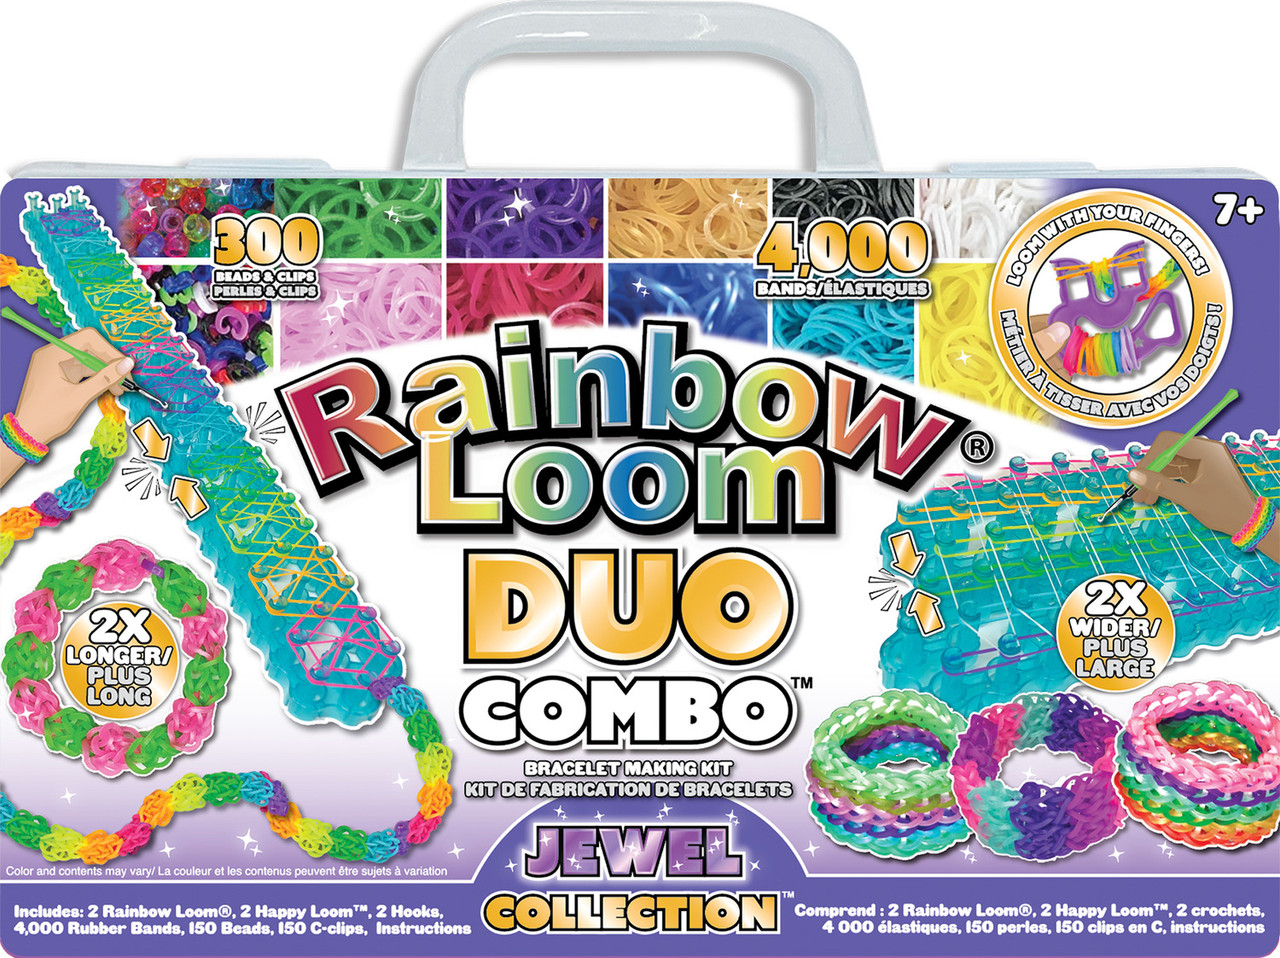 Rainbow Loom - Mega Combo Set — Limolin